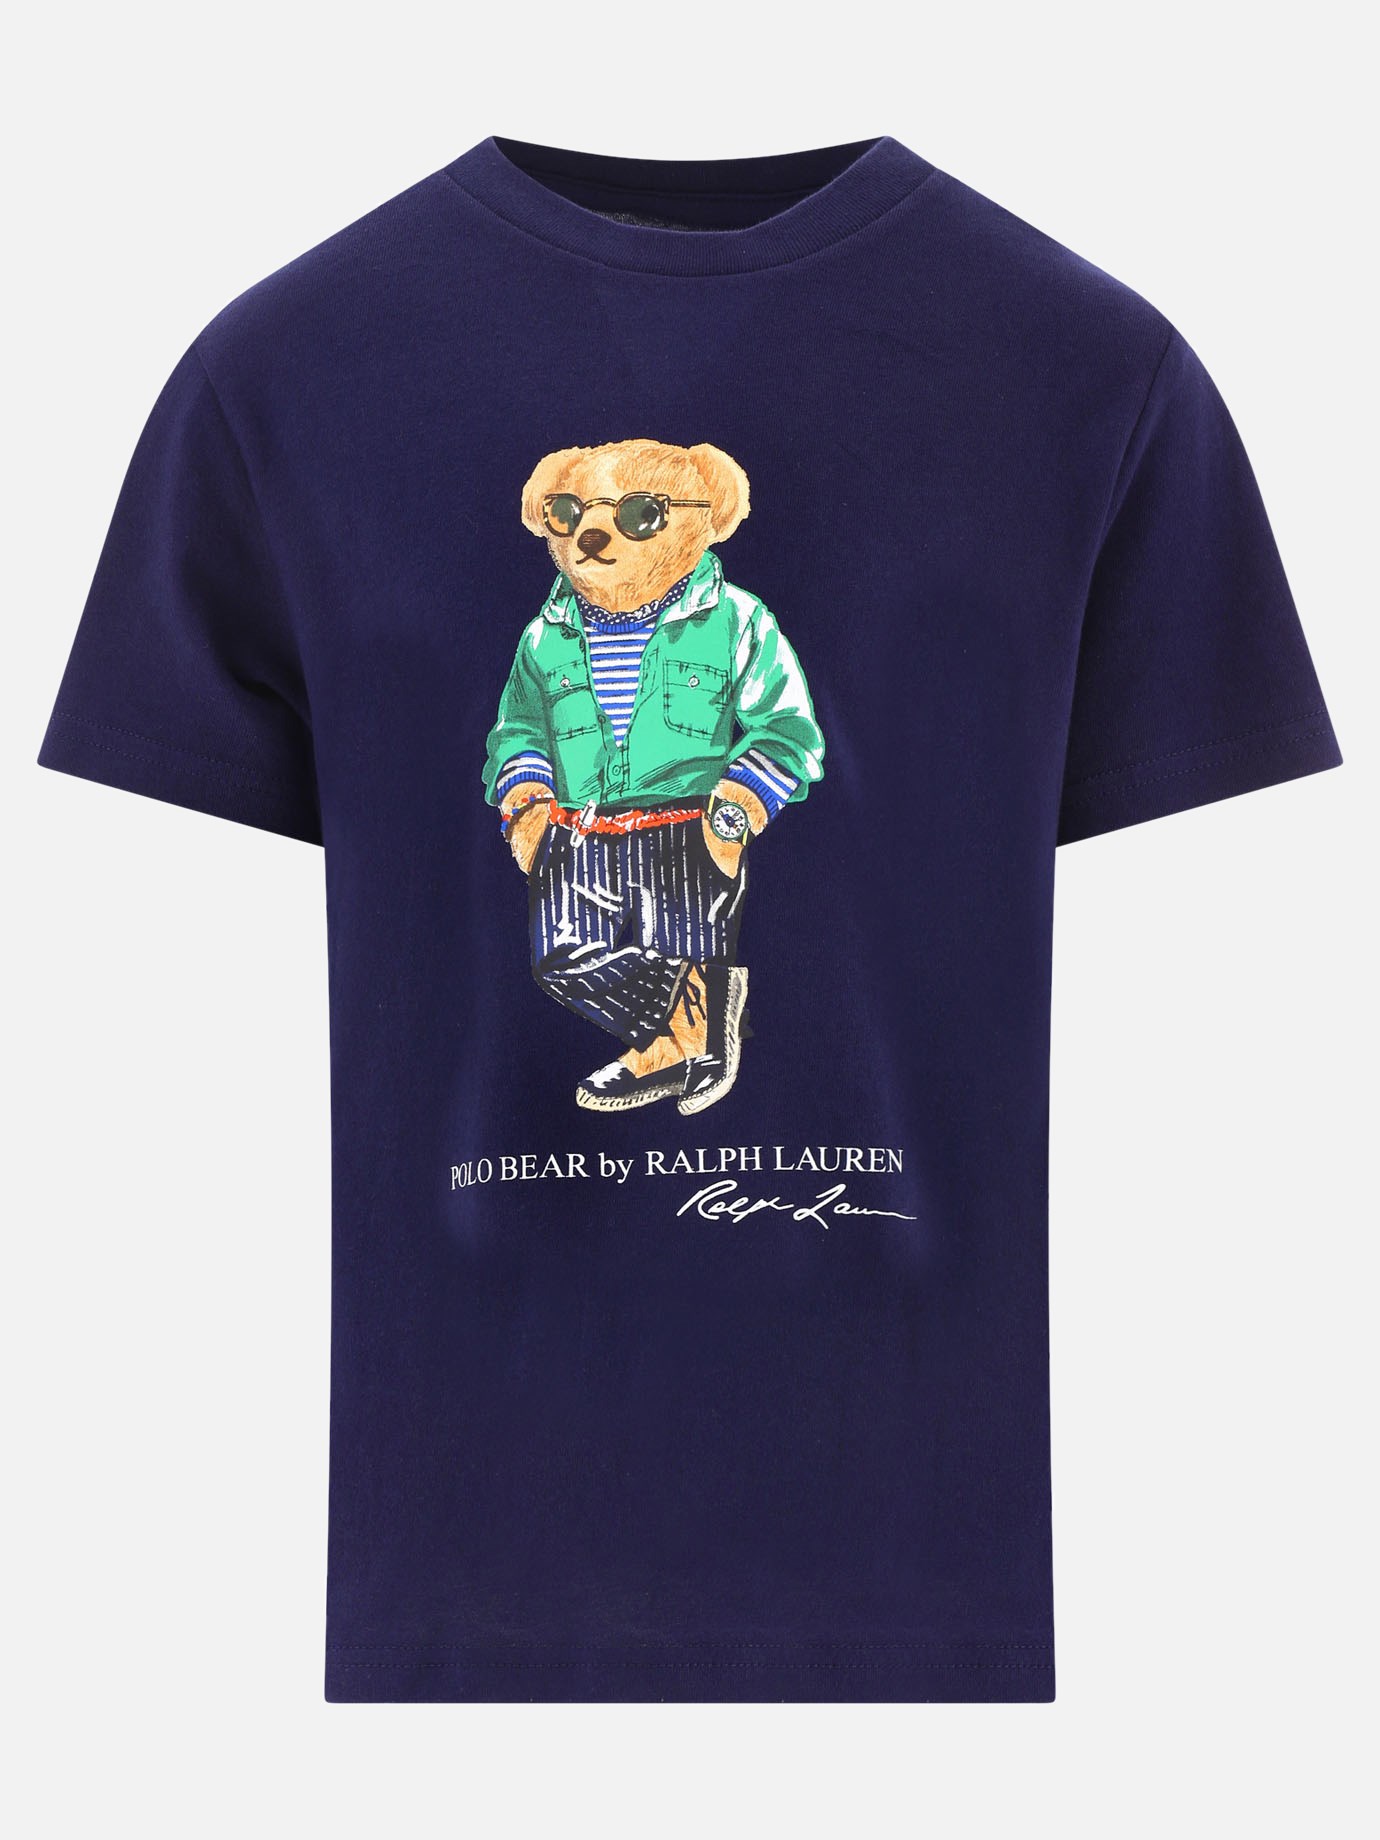  Polo Bear  t-shirtby Ralph Lauren Kids - 5